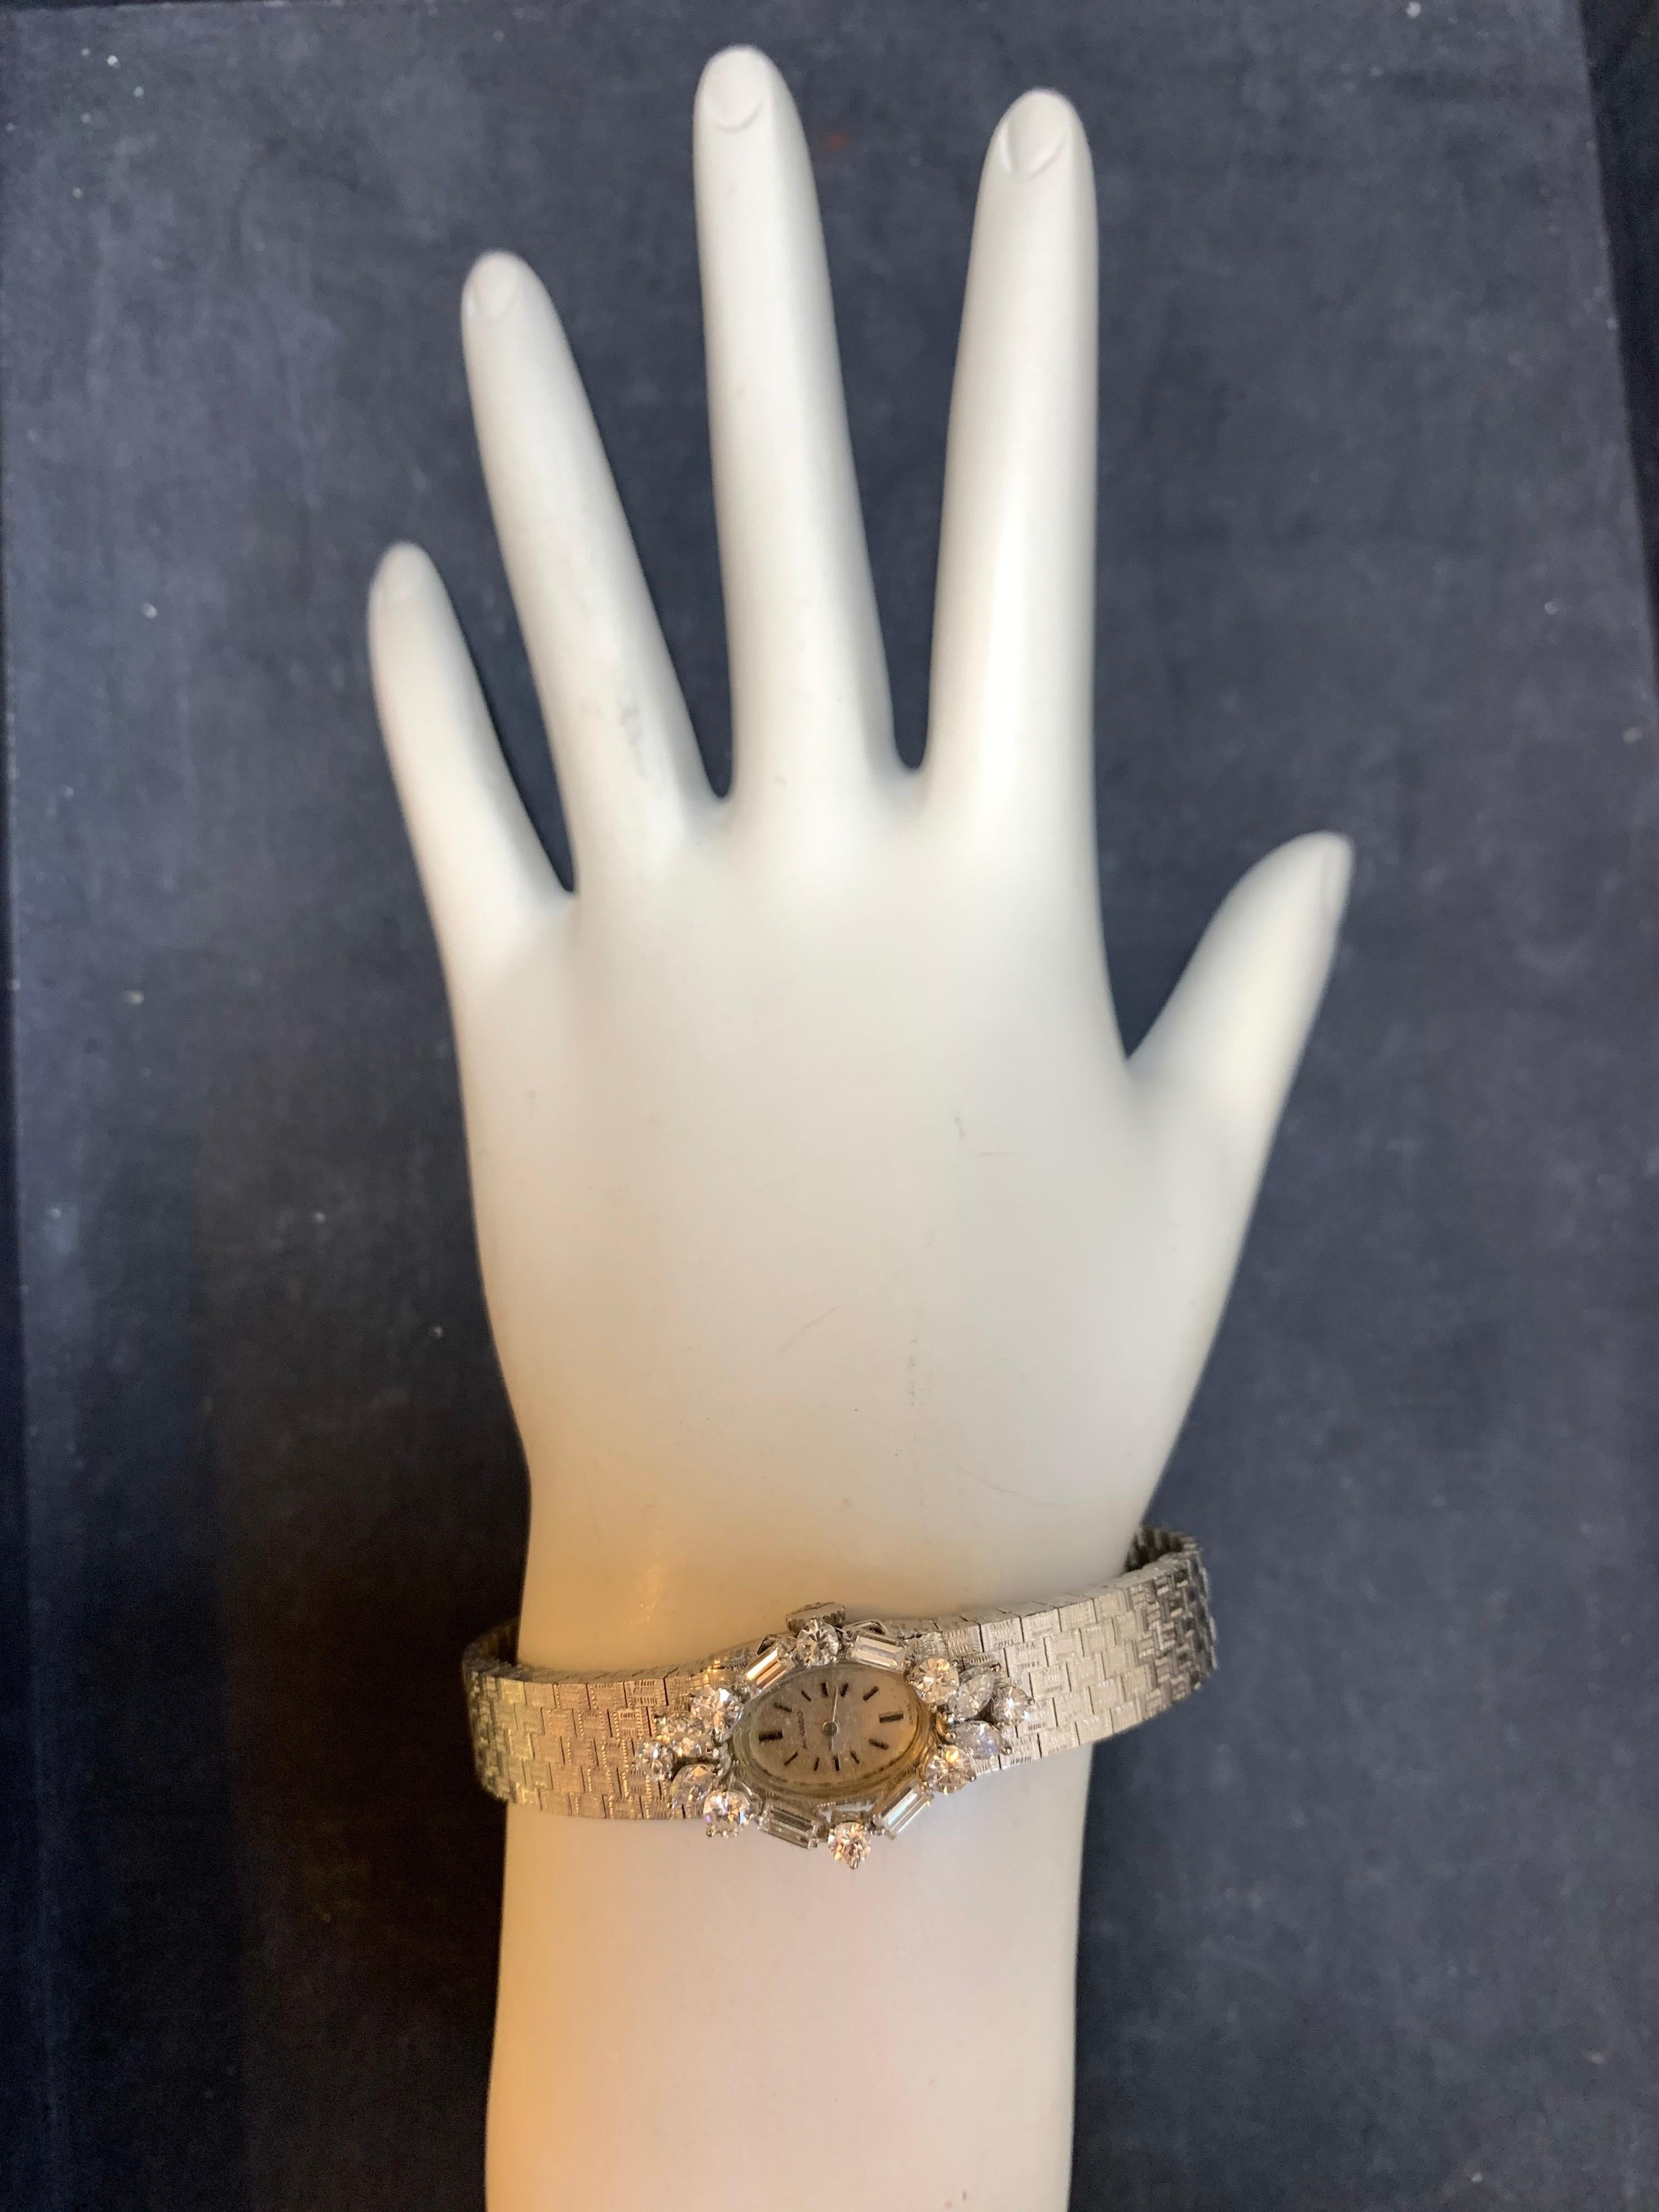 Seltene Movado Collectable Damen 18k Weißgold mit etwa 2 Karat natürlichen Diamanten Handaufzug Cocktail-Uhr. 

Es ist mit 16 natürlichen farblosen Diamanten mit einem Gewicht von etwa 2 Karat, die Uhr selbst wiegt 34,8 Gramm und ist 6,5 